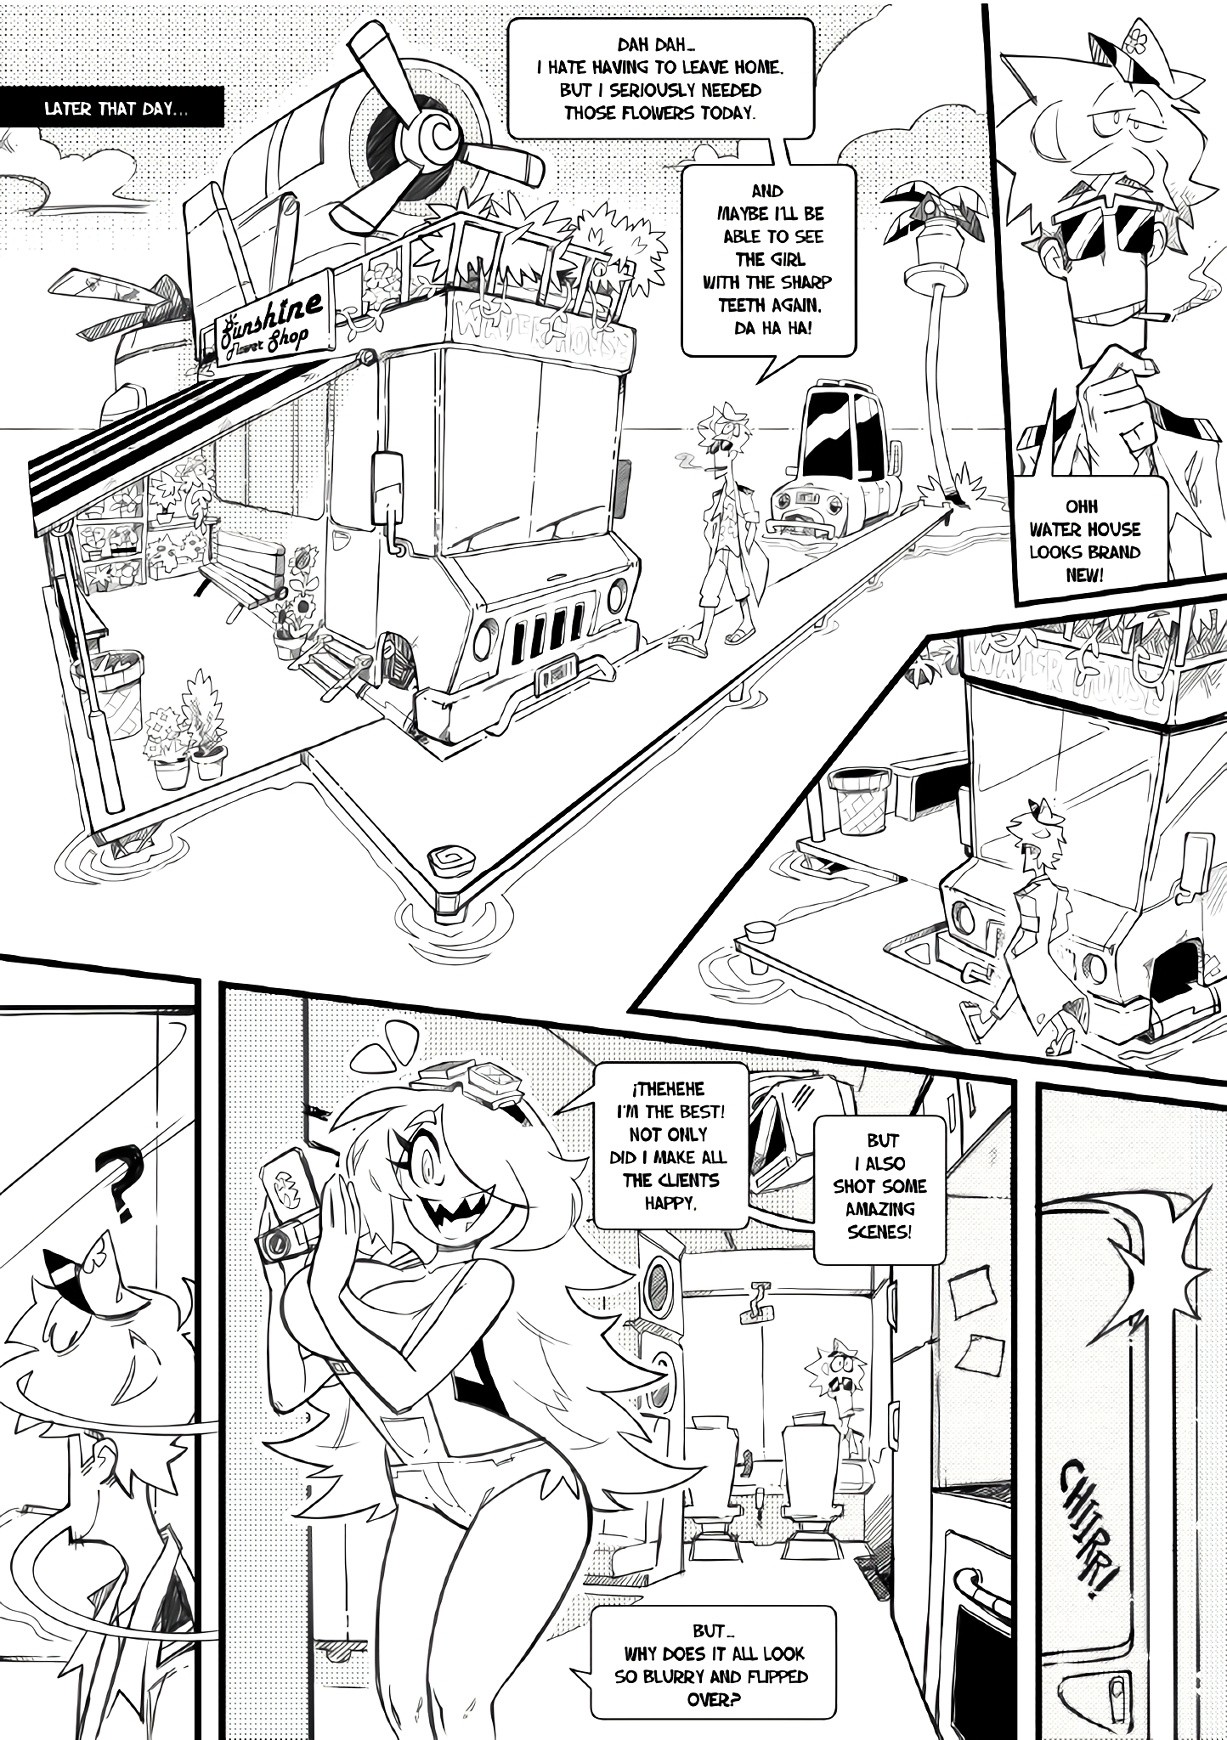 Skarpworld 11: La Petite Mort porn comic picture 25